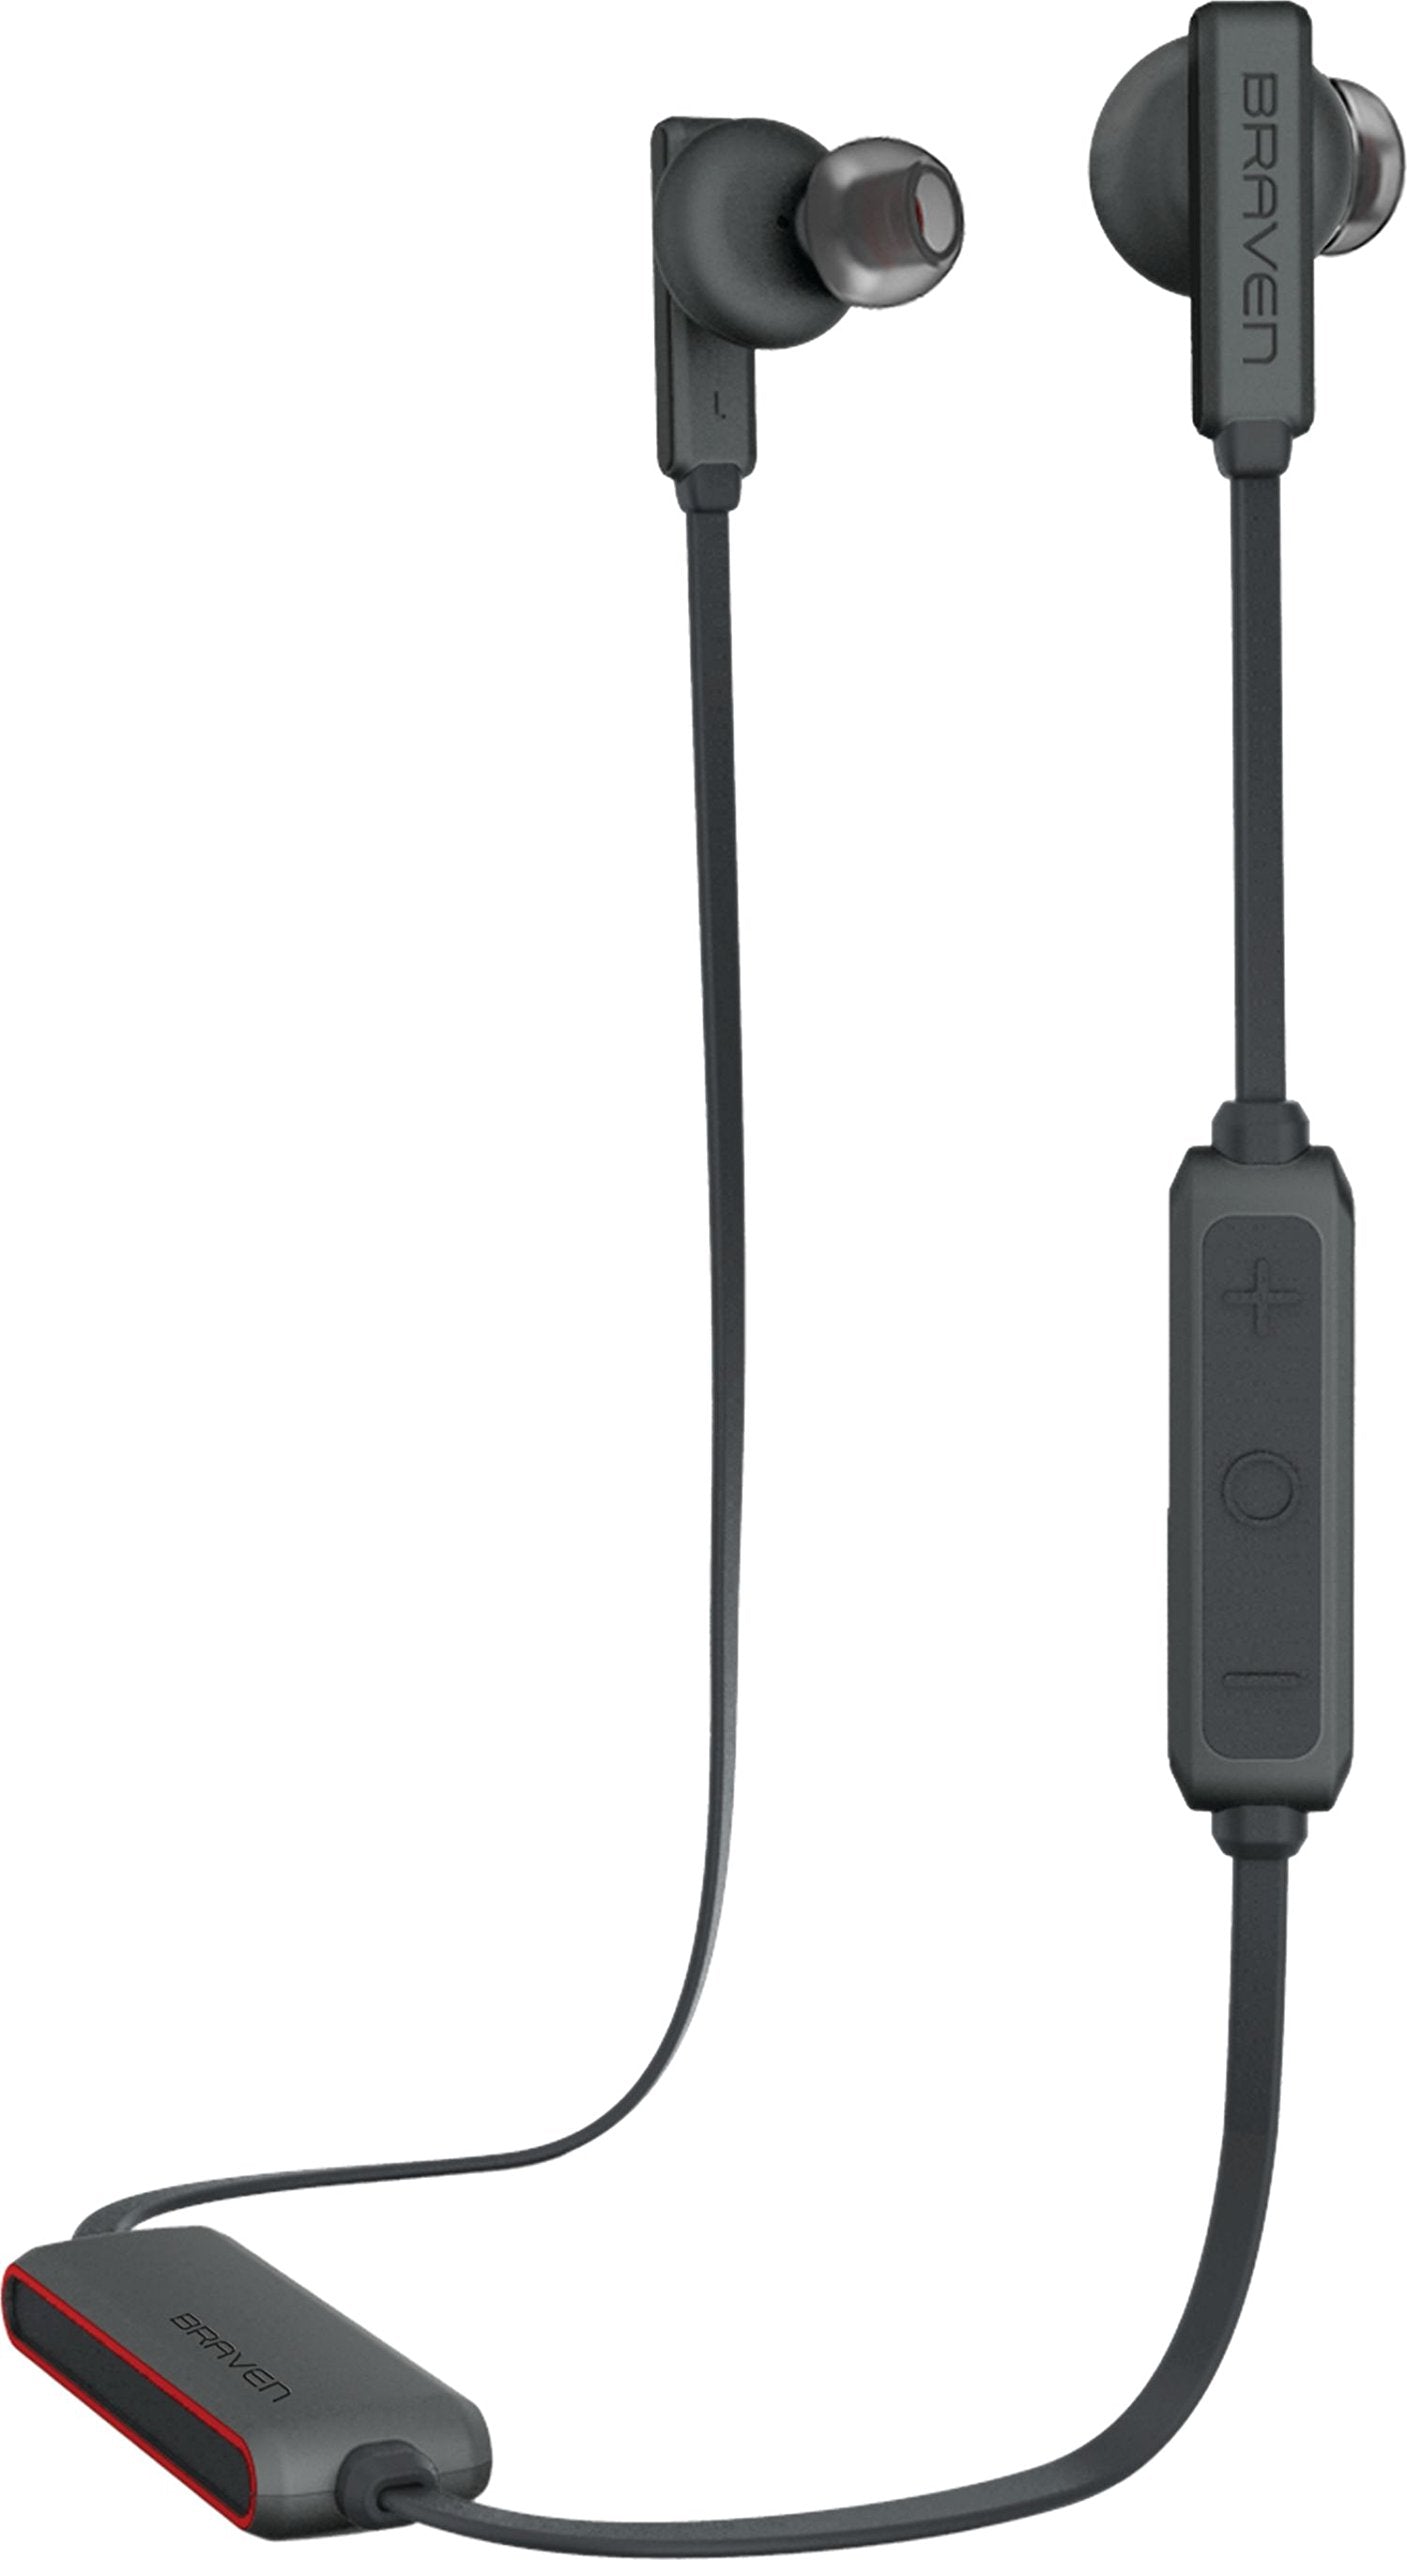 Braven Flye Sport Earbuds Bluetooth Wireless In-Ear ipx5 Water resistant Earphones - Grey/Red